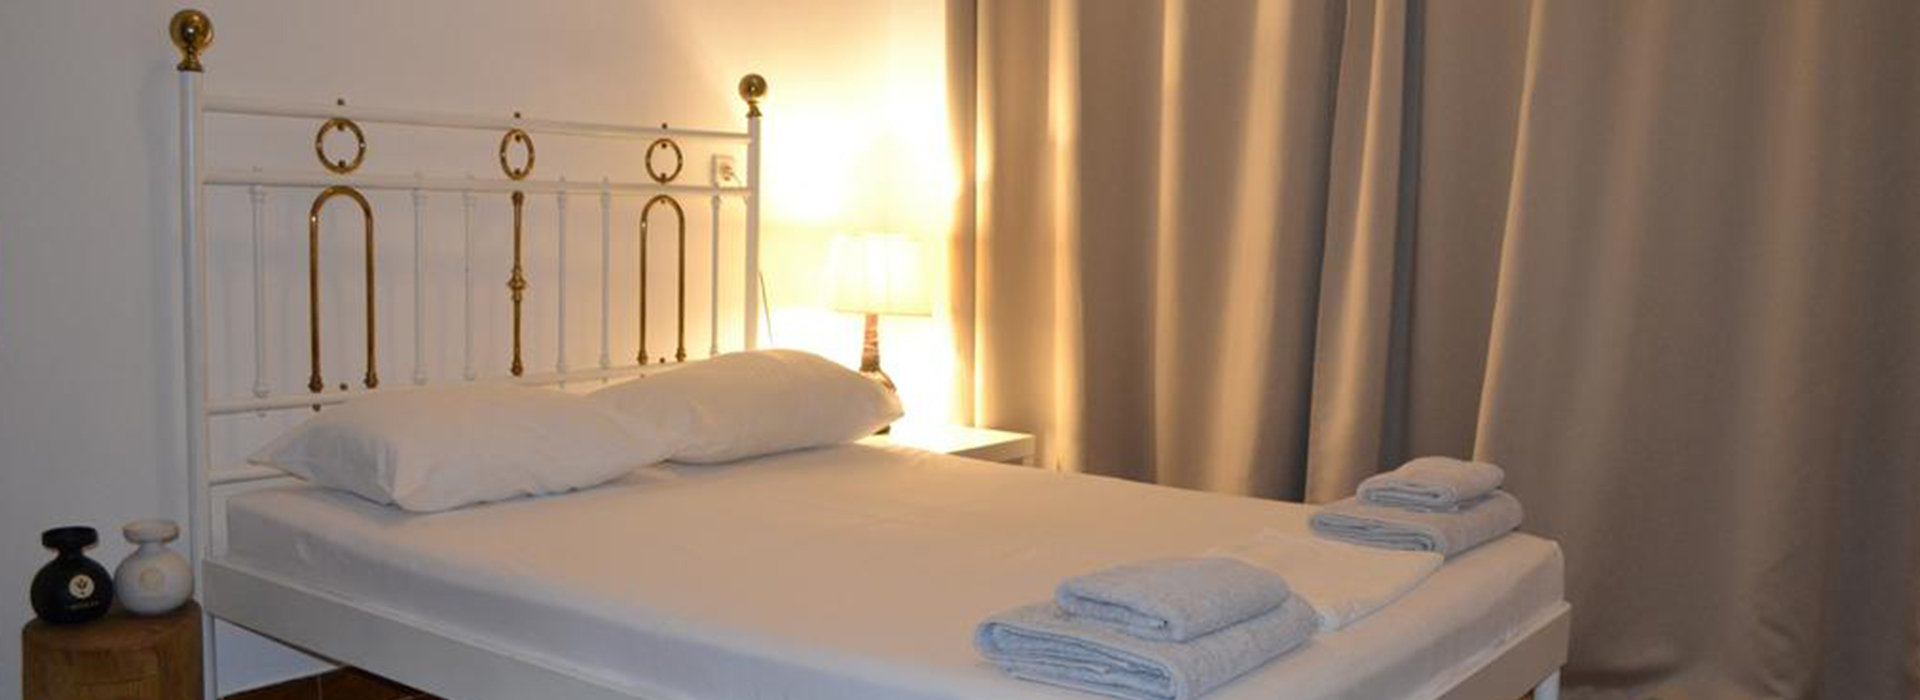 ξενοδοχεια ρωμανος, Accommodation, www.suitesartemis.gr